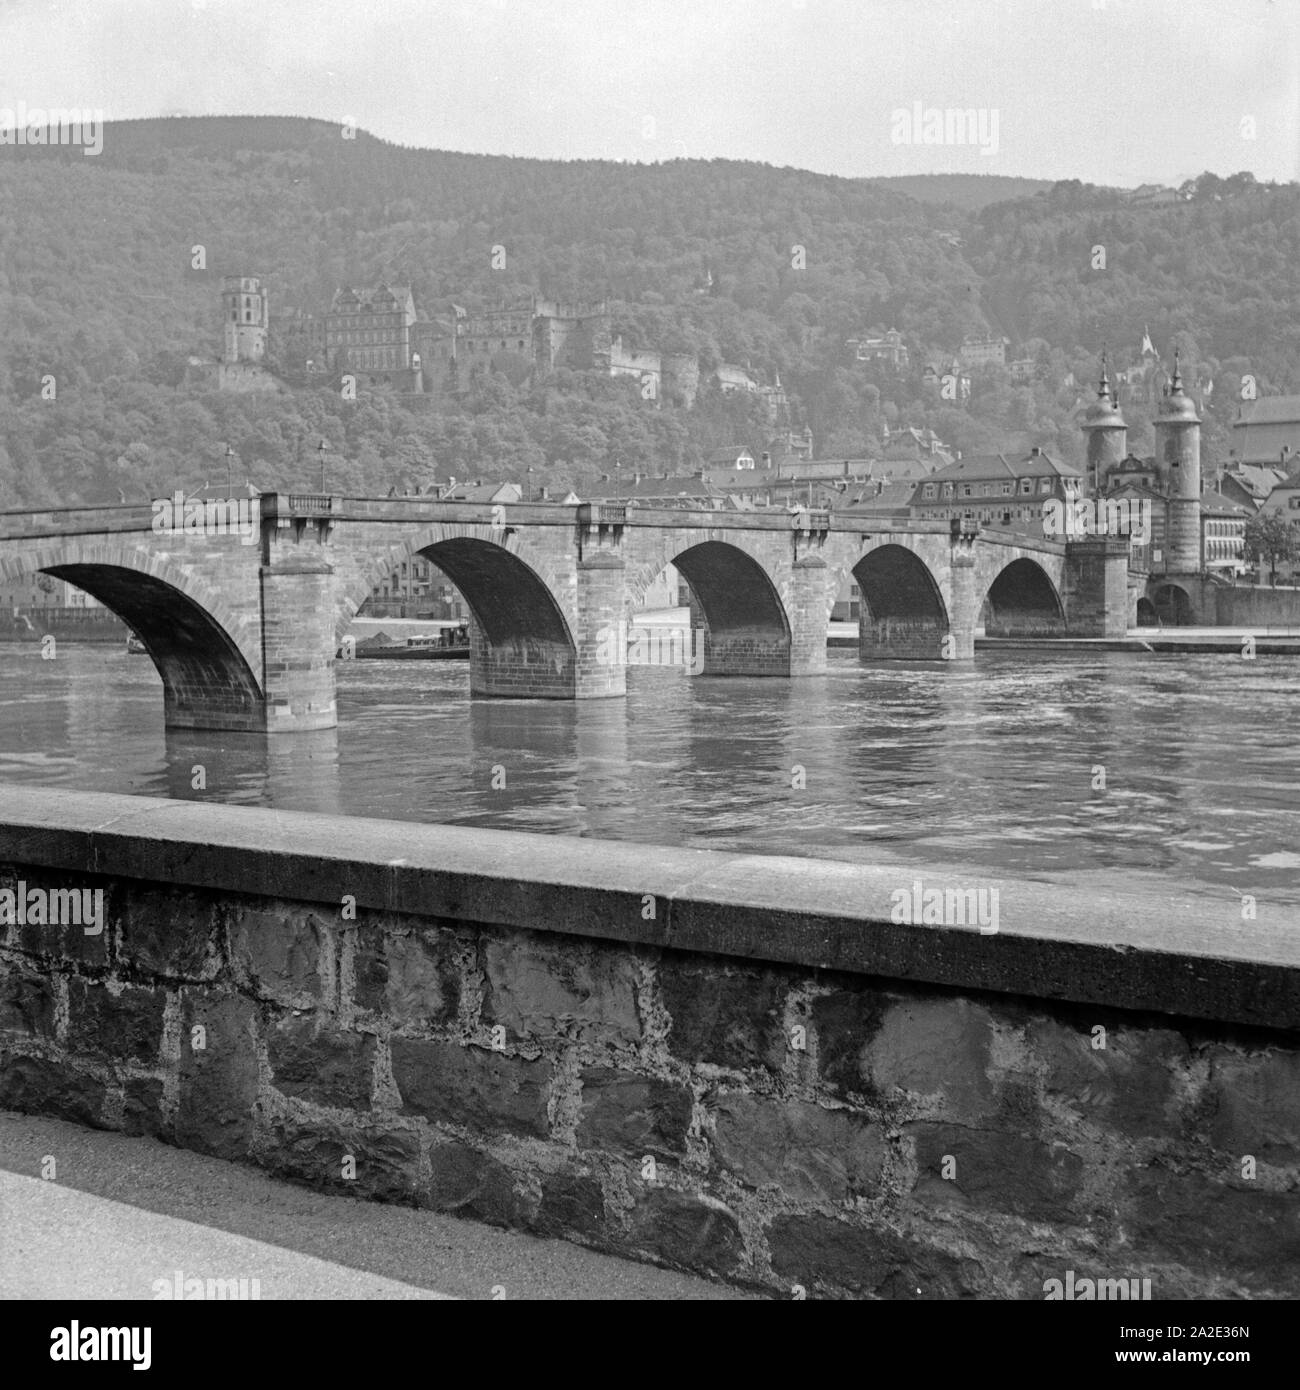 Blick vom gegenüberliegenden Neckarufer auf die alte Brücke und das Schloß von Heidelberg, Deutschland 1930 er Jahre. Avis de th rive opposée du rover de Neckar le vieux pont et le château de Heidelberg, Allemagne 1930. Banque D'Images